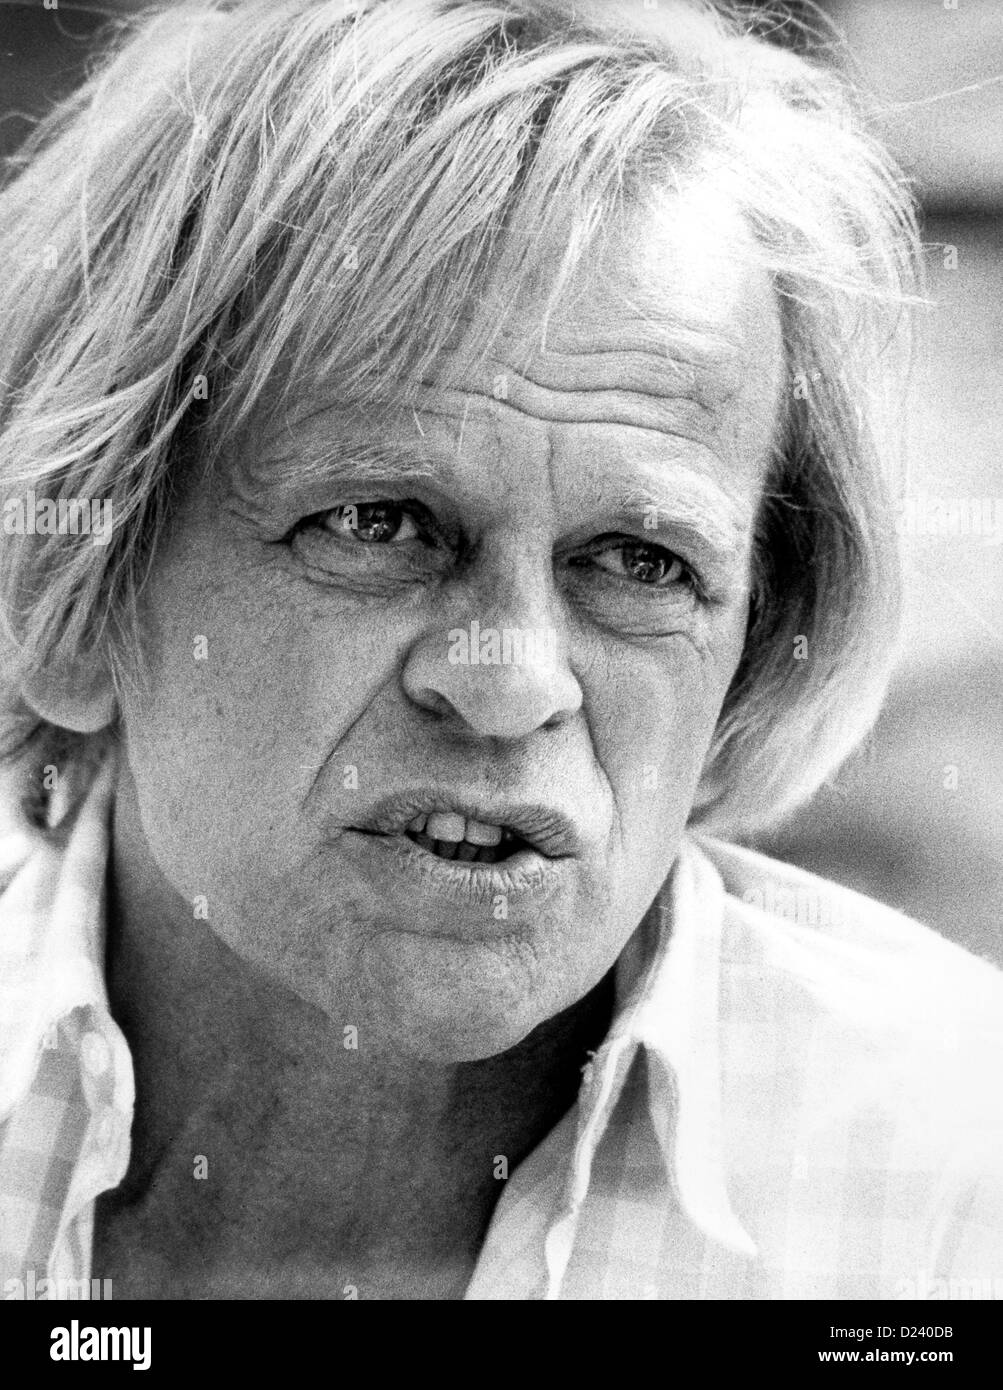 (Dpa file) - attore tedesco Klaus Kinski, mostrato durante il Festival Internazionale del Cinema di Cannes, Francia, 25 maggio 1982. Un'enfant terrible" dell'industria cinematografica, i suoi film includono 'Aguirre, der Zorn Gottes' ('Aguirre: l'ira di Dio") e 'Nosferatu: Phantom der Nacht' ('Nosferatu il vampiro"). Kinski è nato il 18 ottobre 1926 a Danzica, Germania (ora Danzica, Polonia) sotto il nome di Nikolaus Guenther Nakszynski e morì il 23 novembre 1991 in Lagunitas, California, di un attacco di cuore. Foto Stock